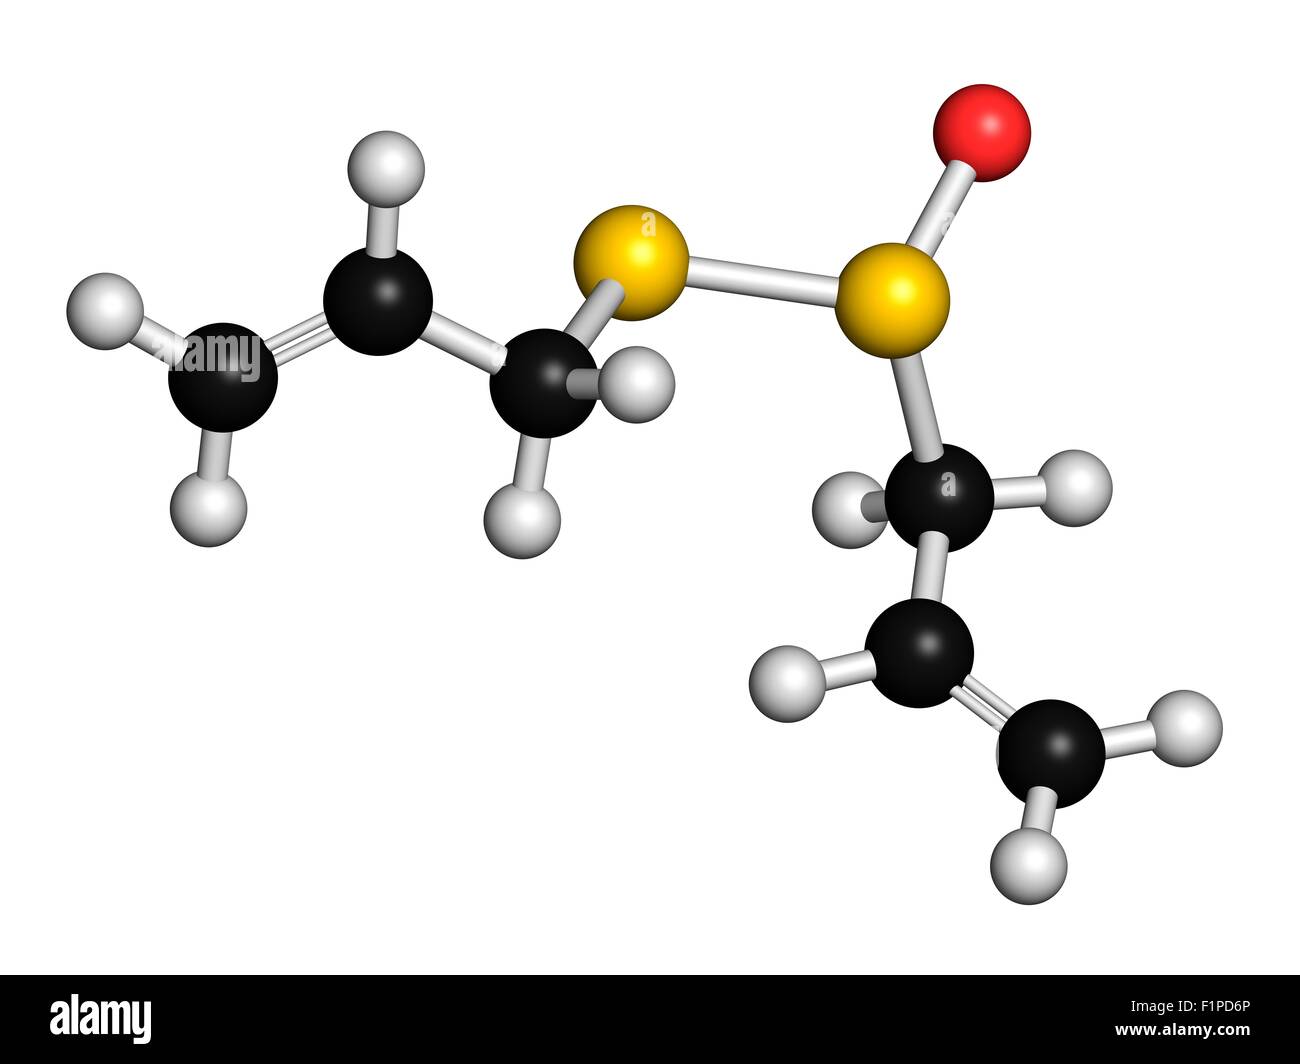 Aglio Allicin molecola formata da alliin dall'enzima alliinase ritiene di avere un certo numero di effetti positivi sulla salute atomi Foto Stock